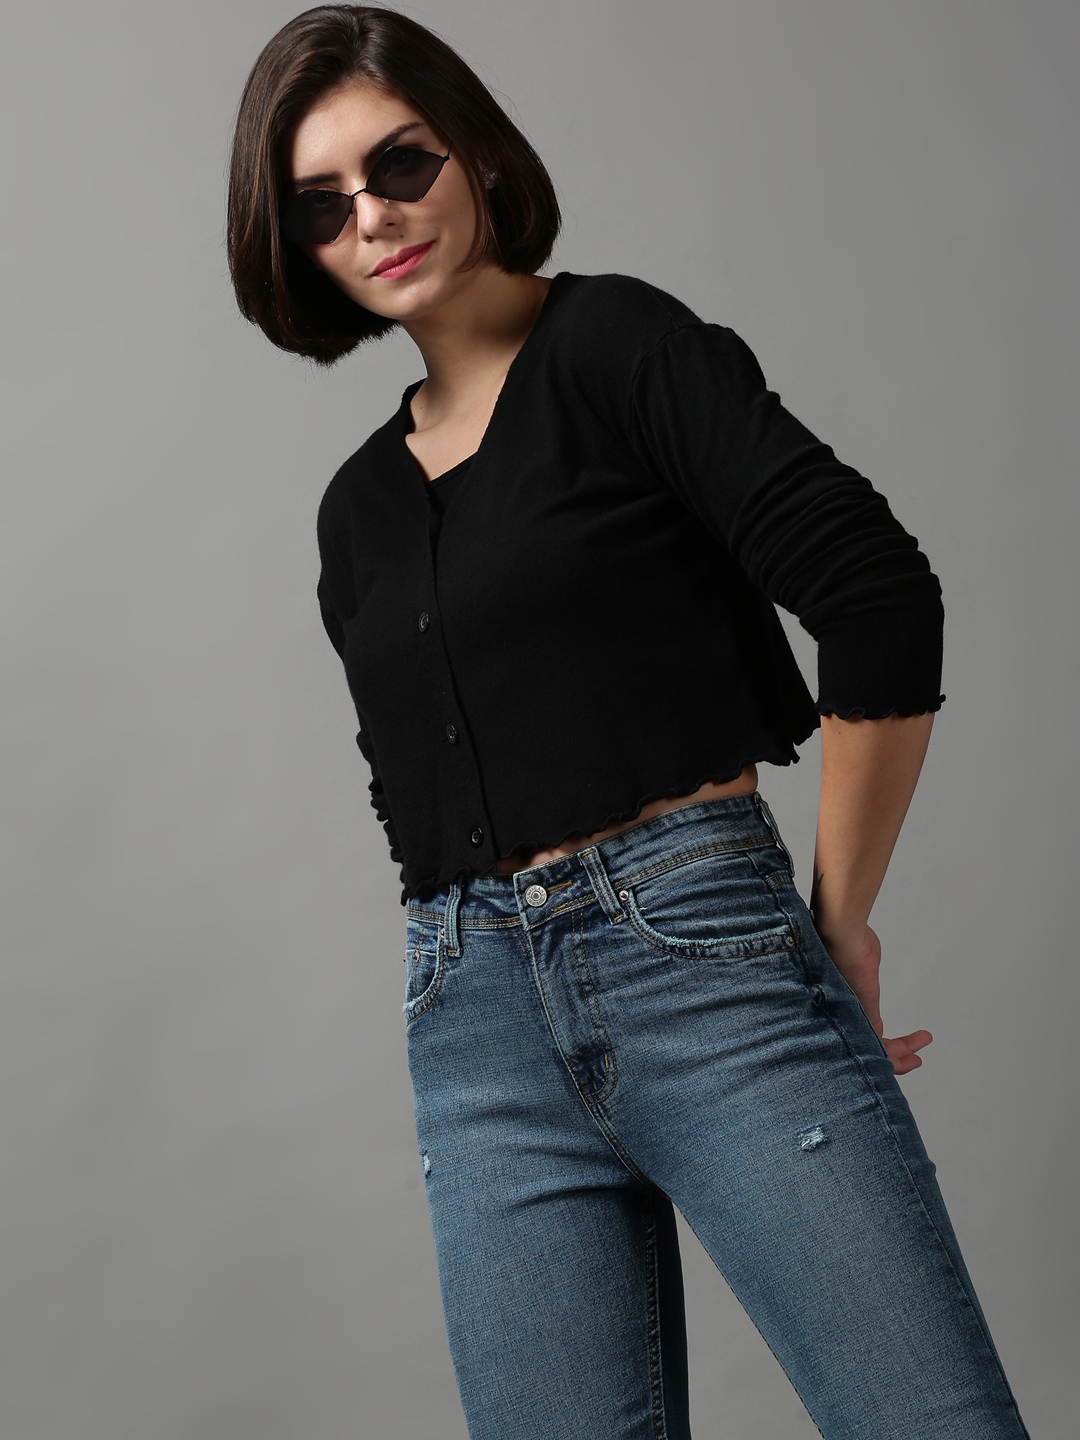 SHOWOFF Women's Long Sleeves V-Neck Black Solid Sweater Vest